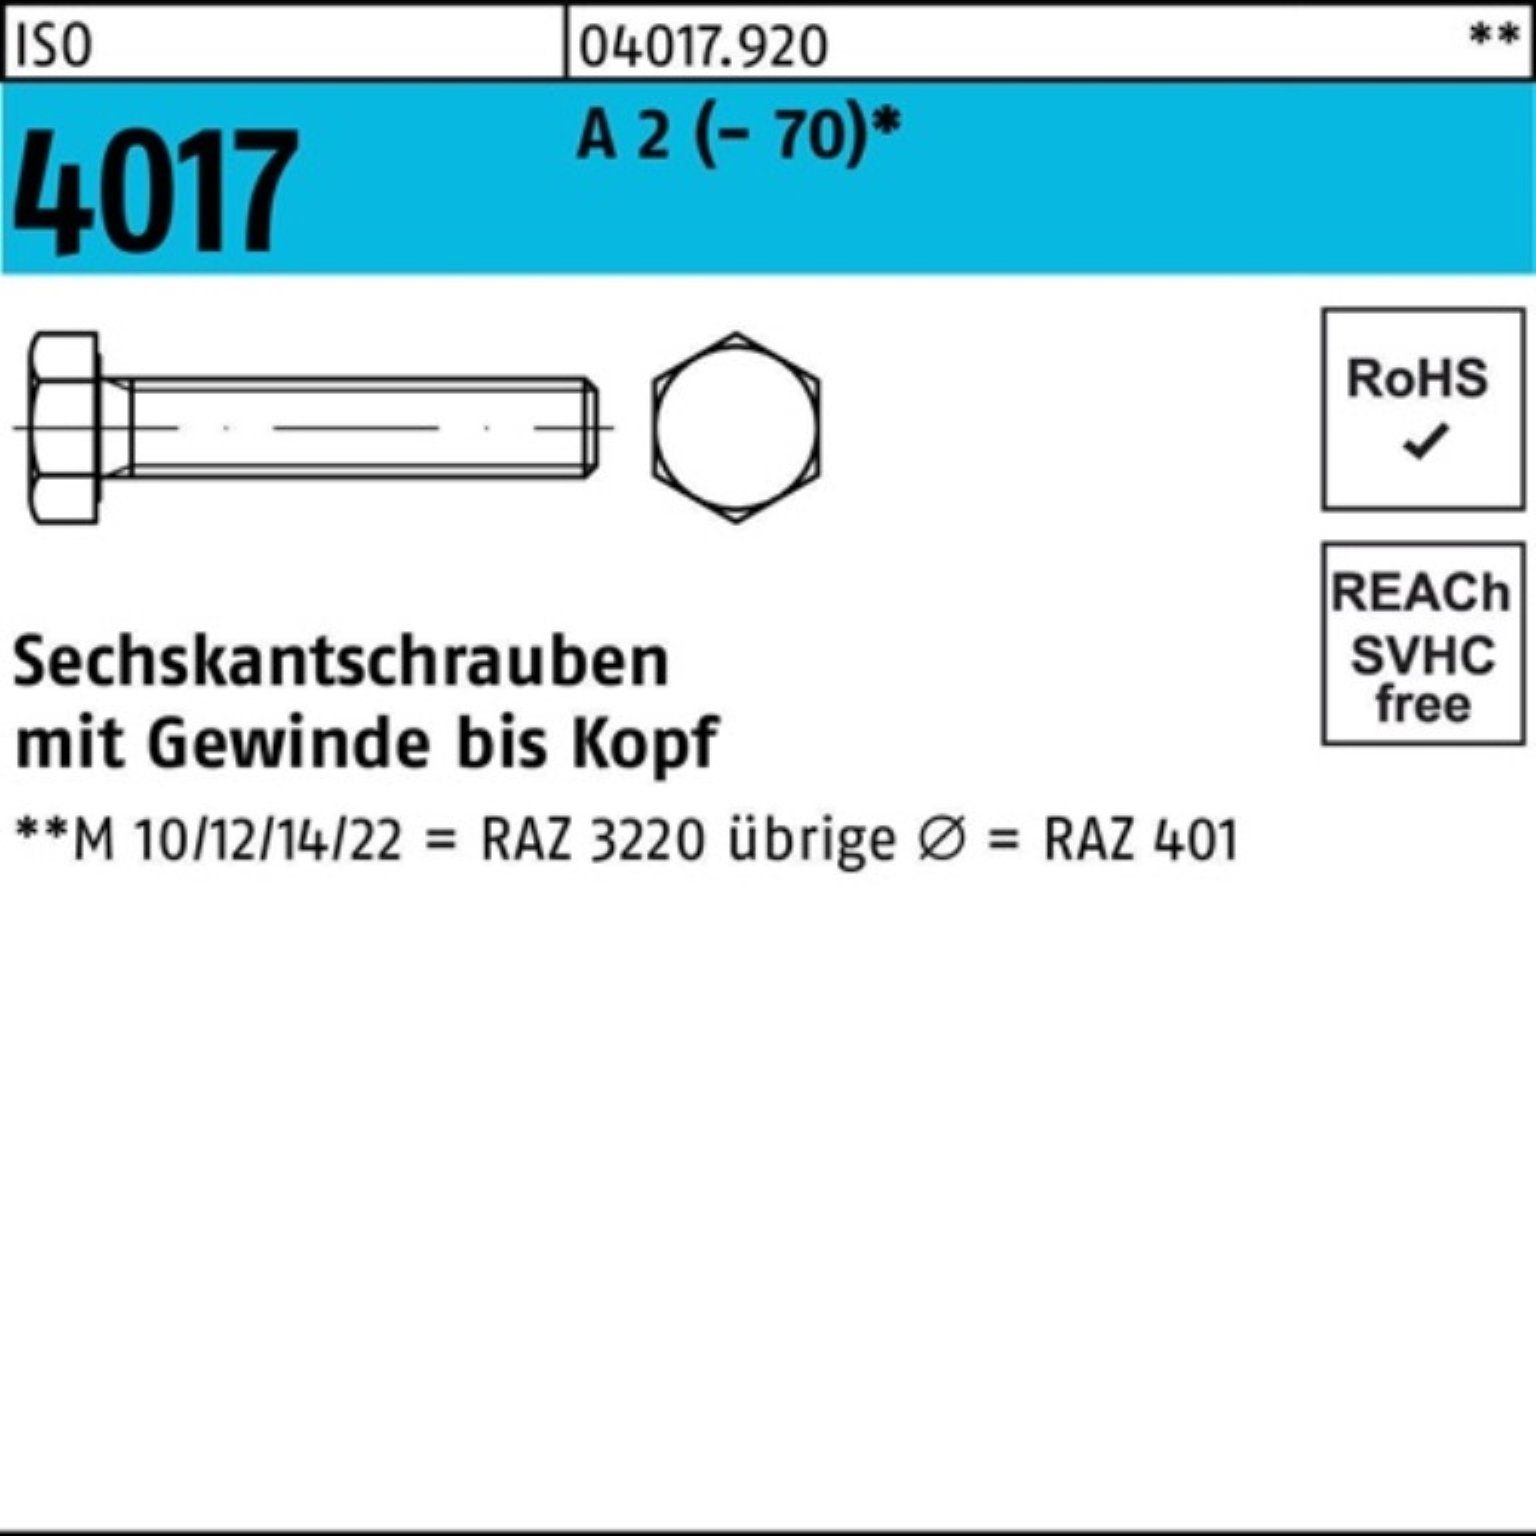 Bufab Sechskantschraube 100er Pack Sechskantschraube ISO 4017 VG M16x 120 A 2 (70) 25 Stück